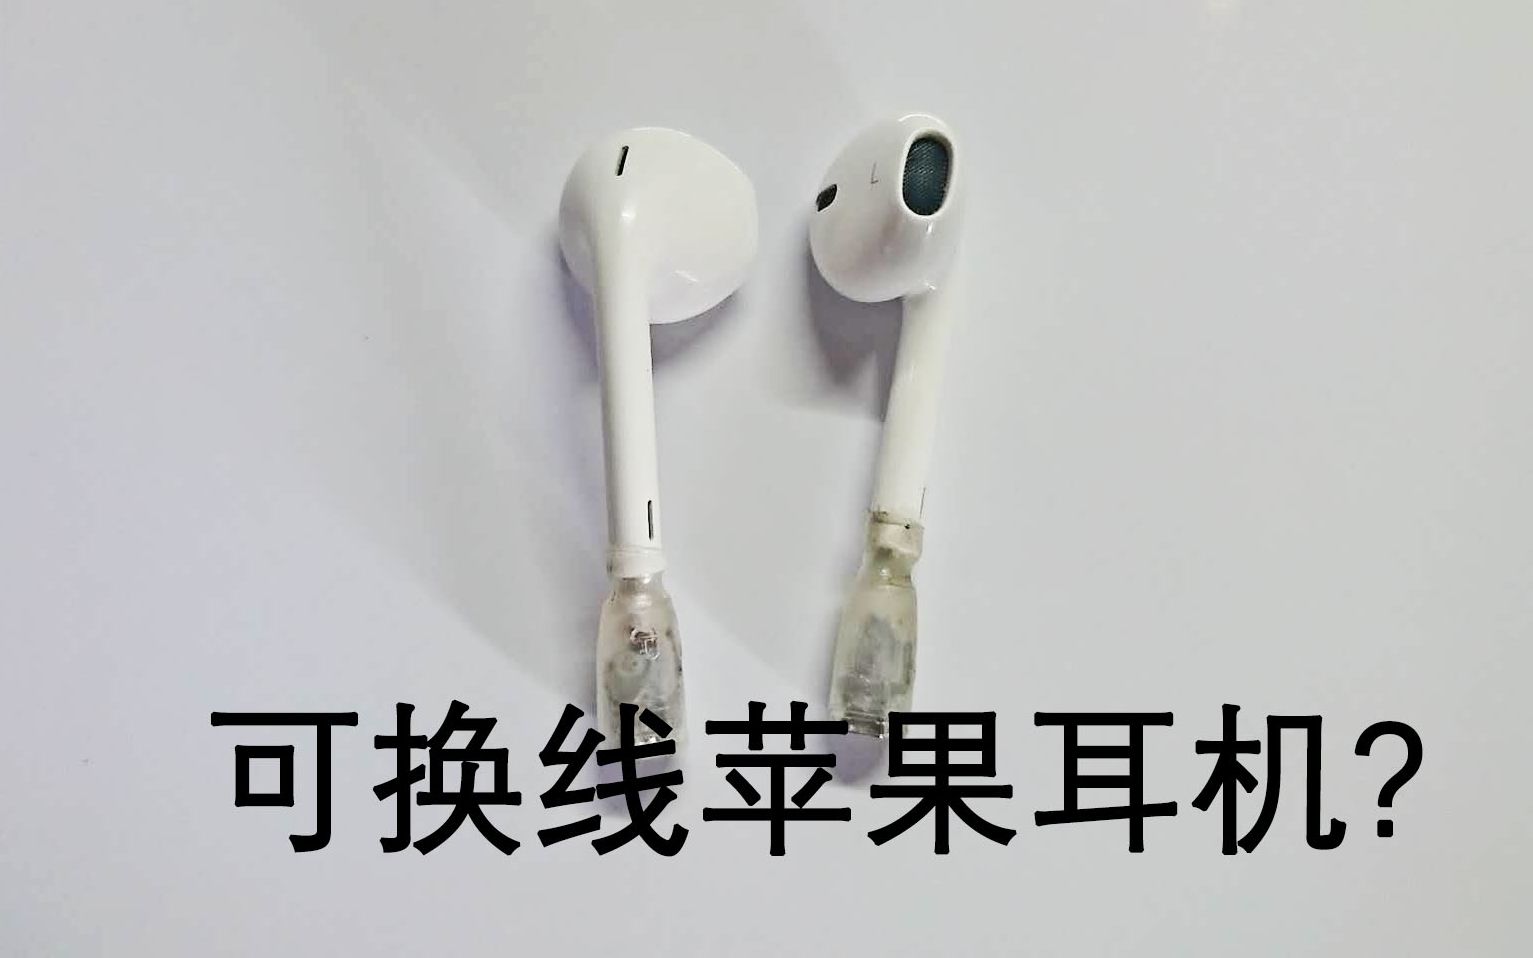 【DIY】如何将普通耳机改装成可换线耳机（教程）